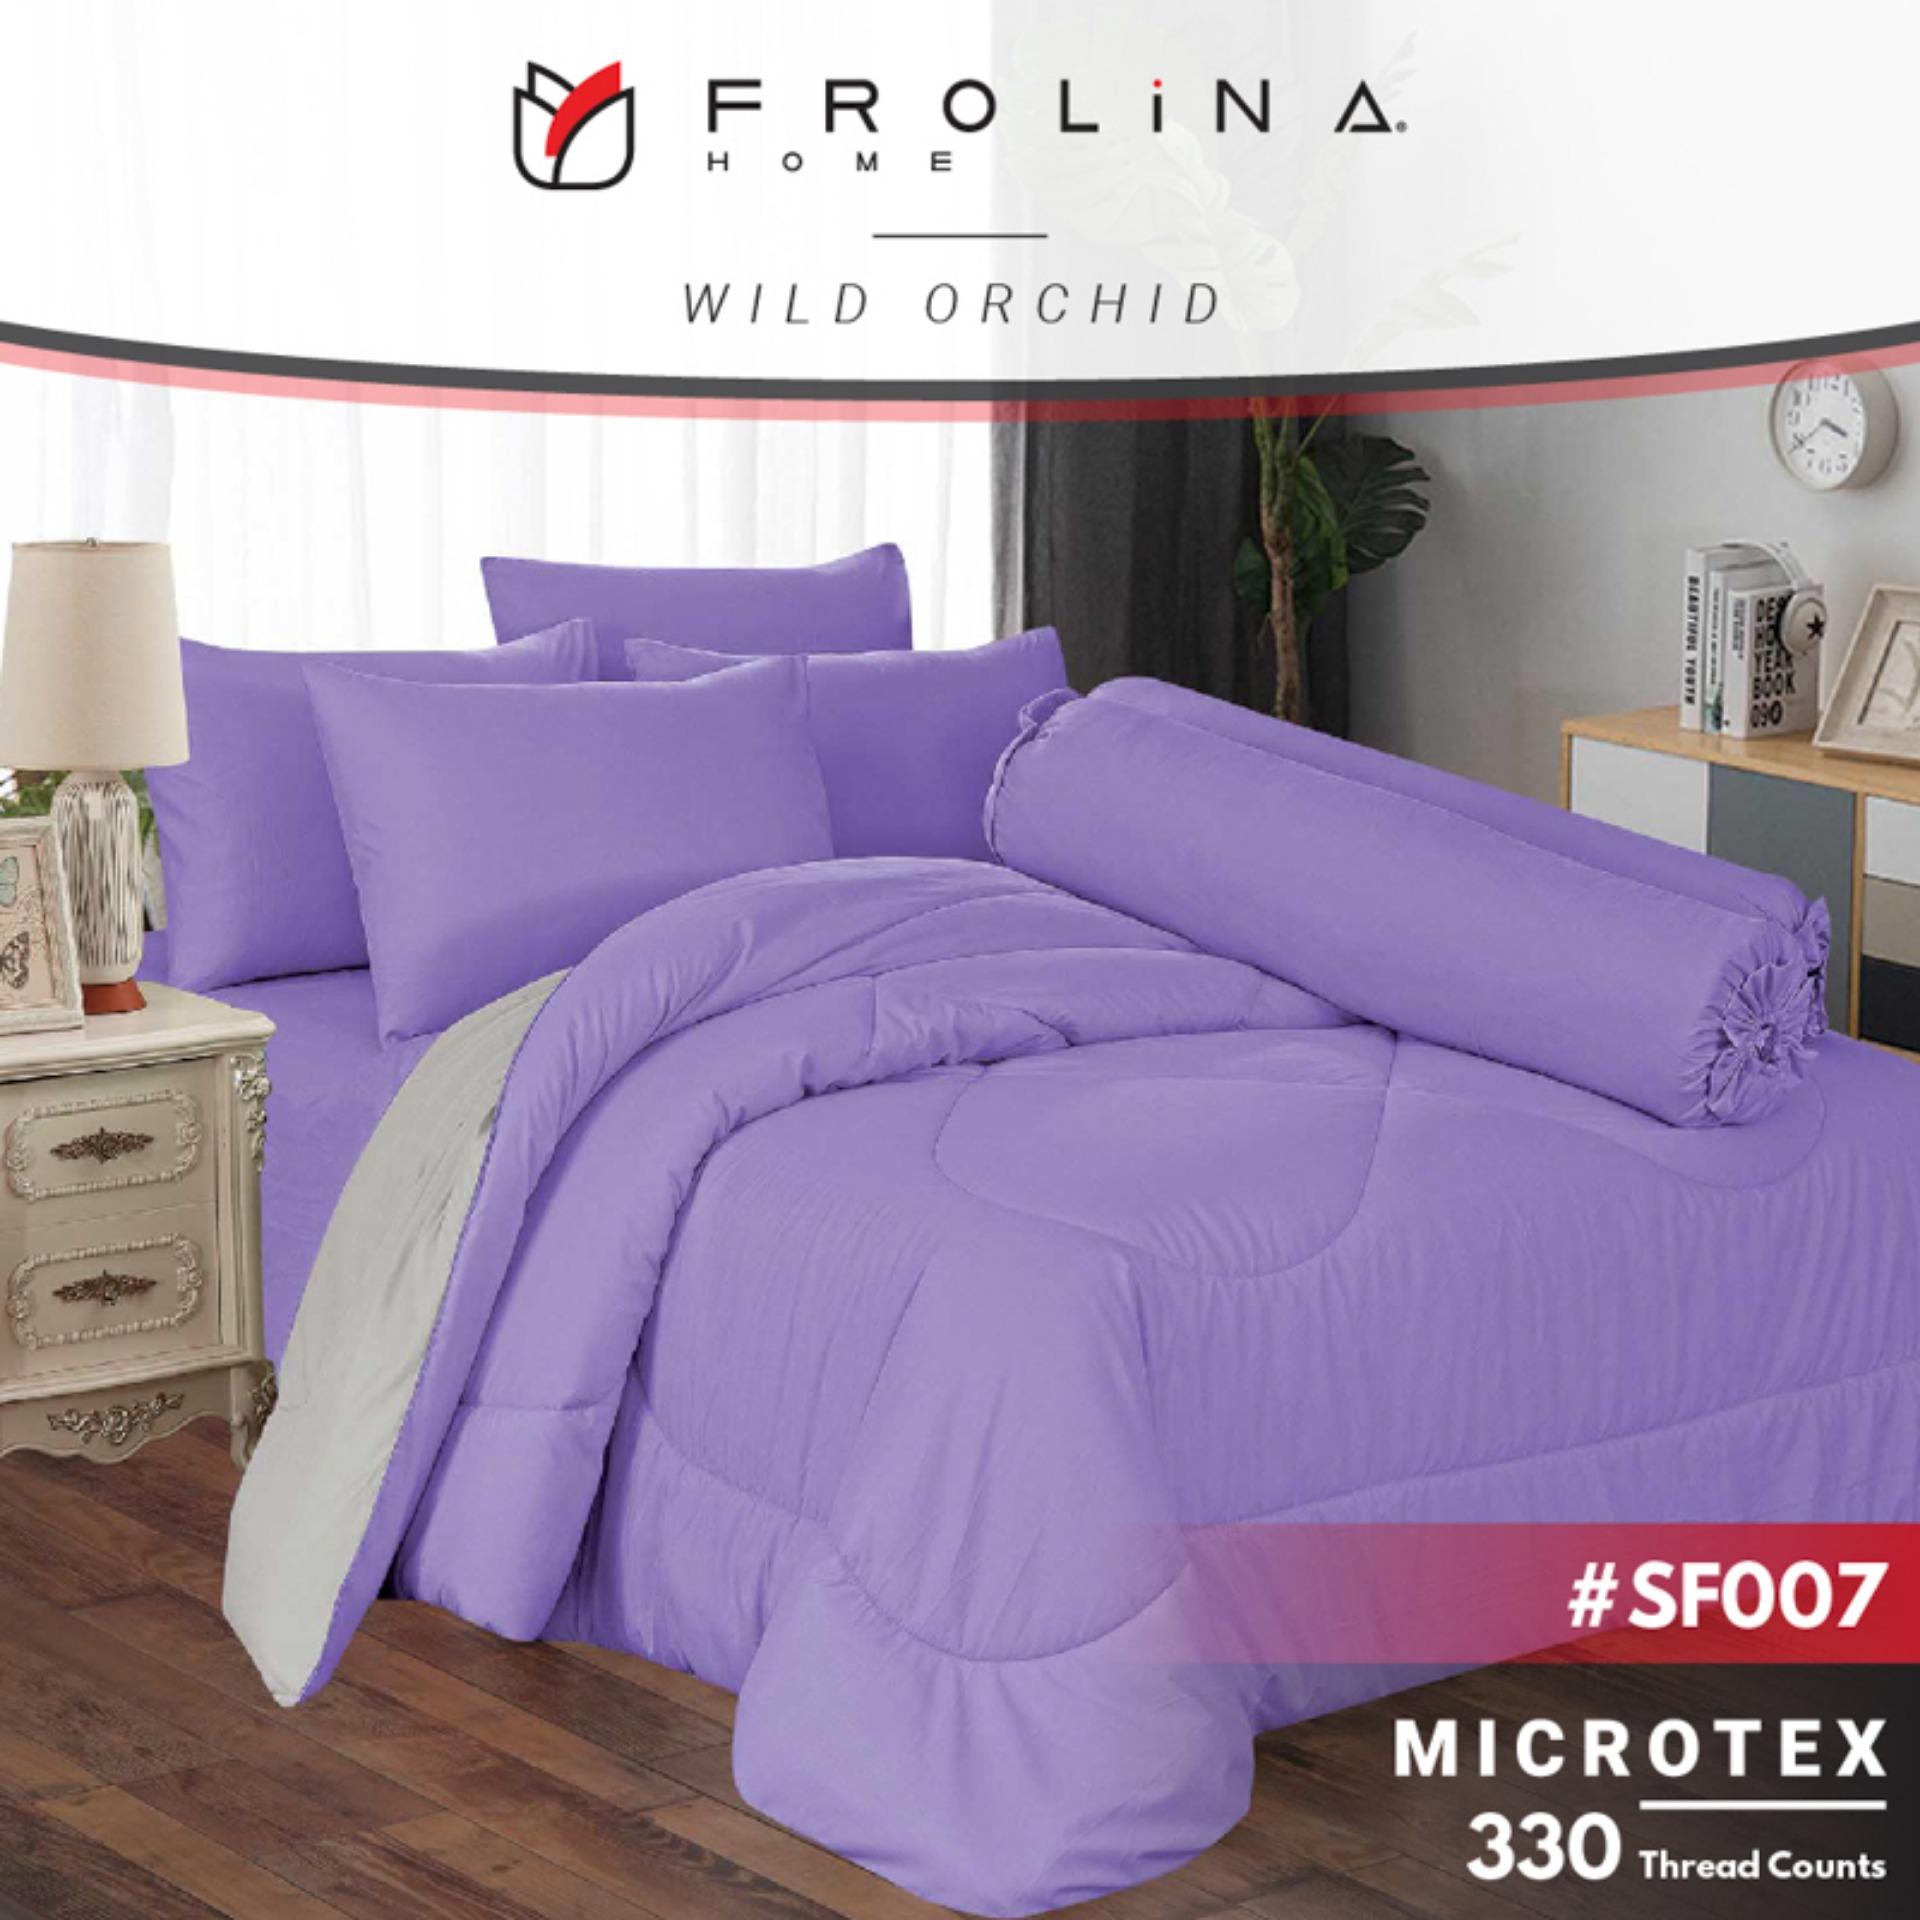 Frolina ผ้านวม  3.5 ฟุต Twin ขนาด 60x80 นิ้ว รุ่น Microtex 330 Thread Count มี 8 สี สี Wild Orchid สี Wild Orchidขนาดสินค้า 3.5 ฟุตลักษณะสินค้า ทันสมัยและมีสไตล์